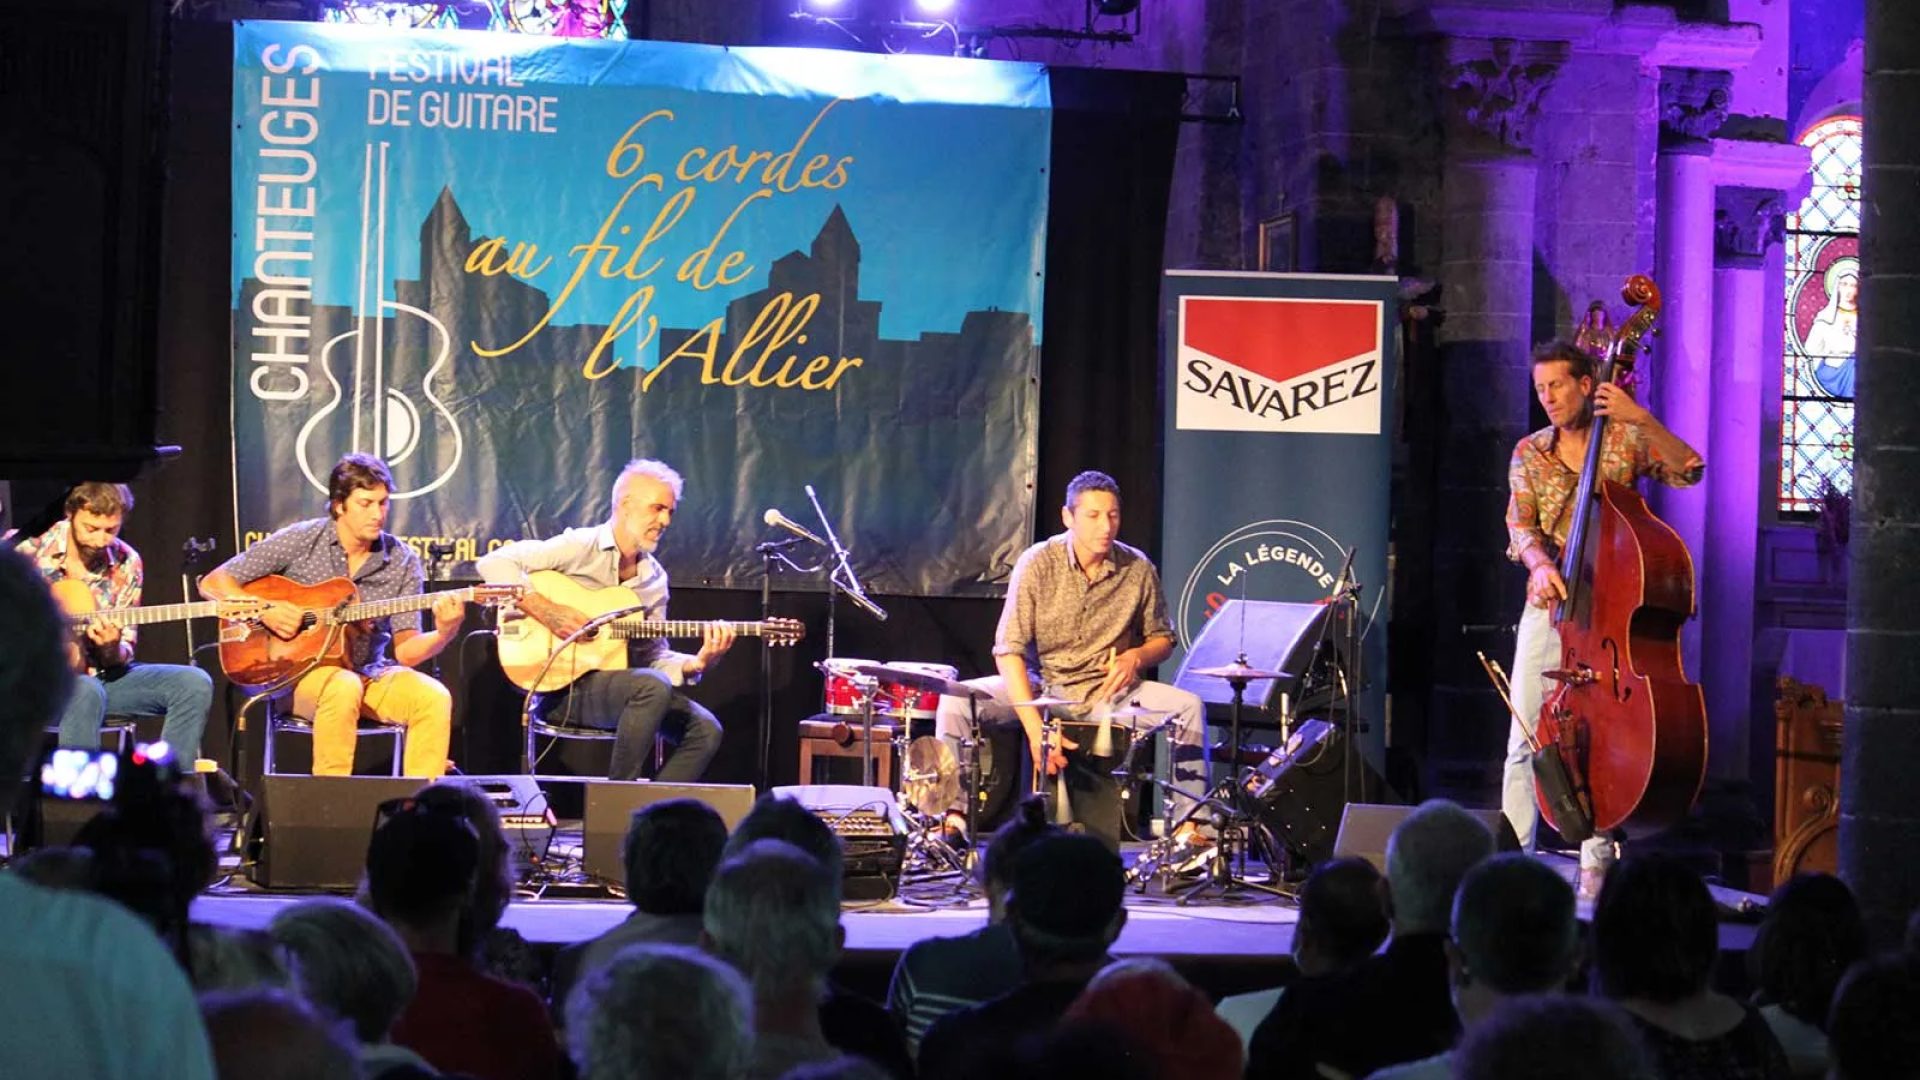 Eine Musikgruppe tritt auf der Bühne des Festivals Six Cordes au fil de l'Allier in Haute-Loire, Auvergne auf